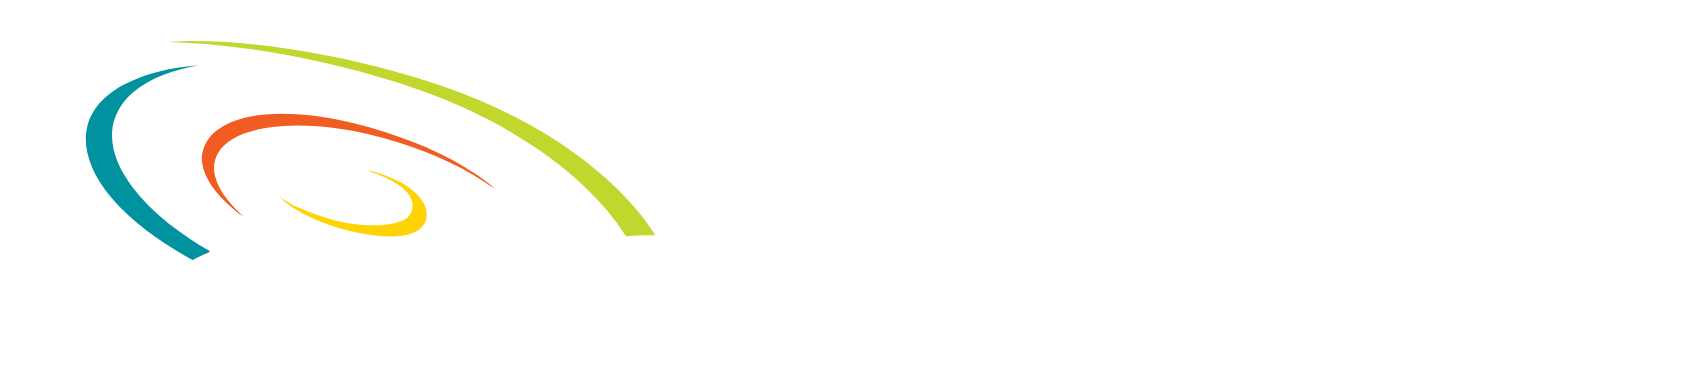 Concentrix logo large for dark backgrounds (transparent PNG)